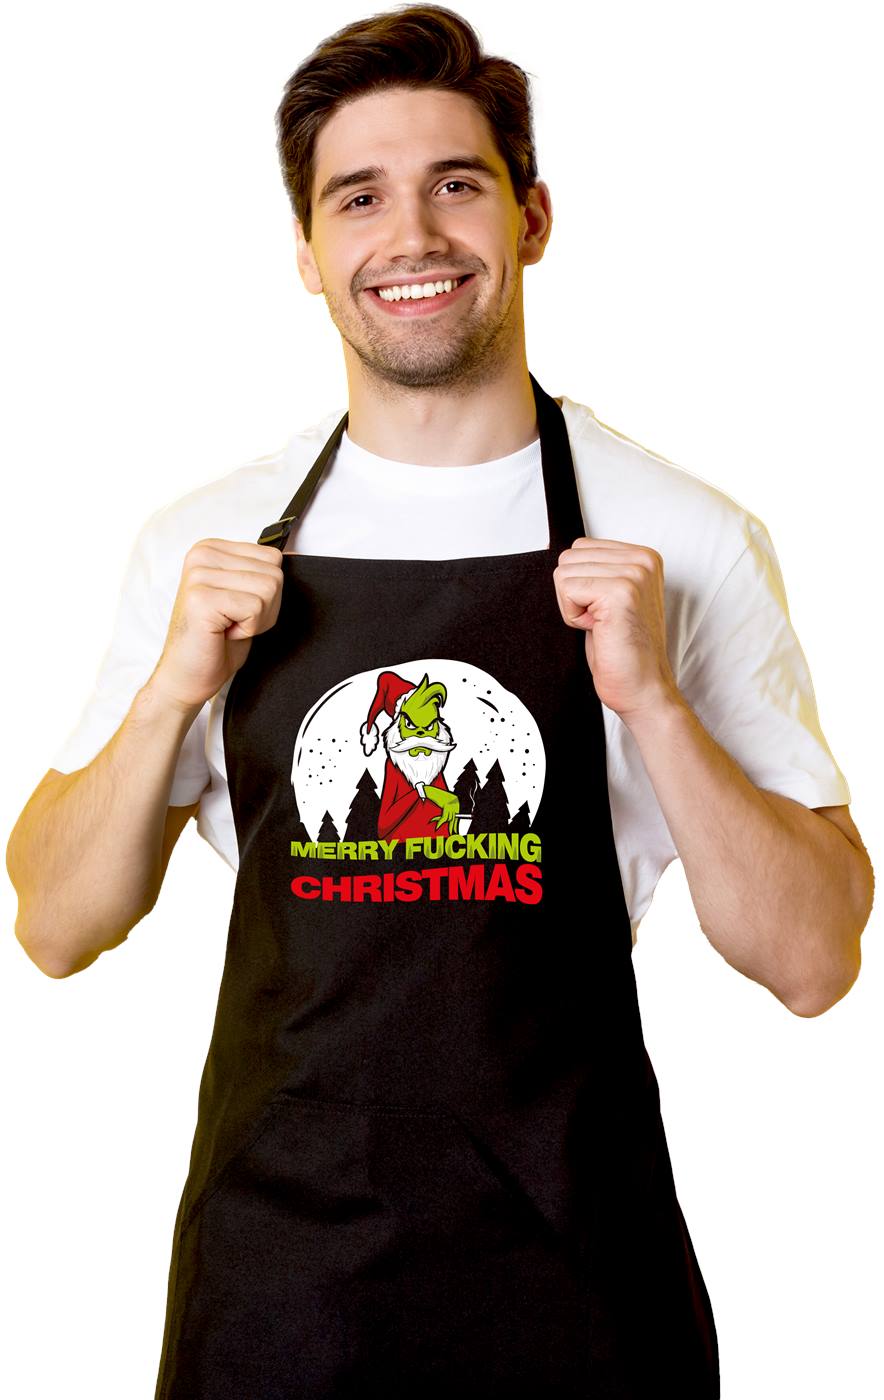 Bild: Kochschürze - Grinch - Merry fucking Christmas Geschenkidee